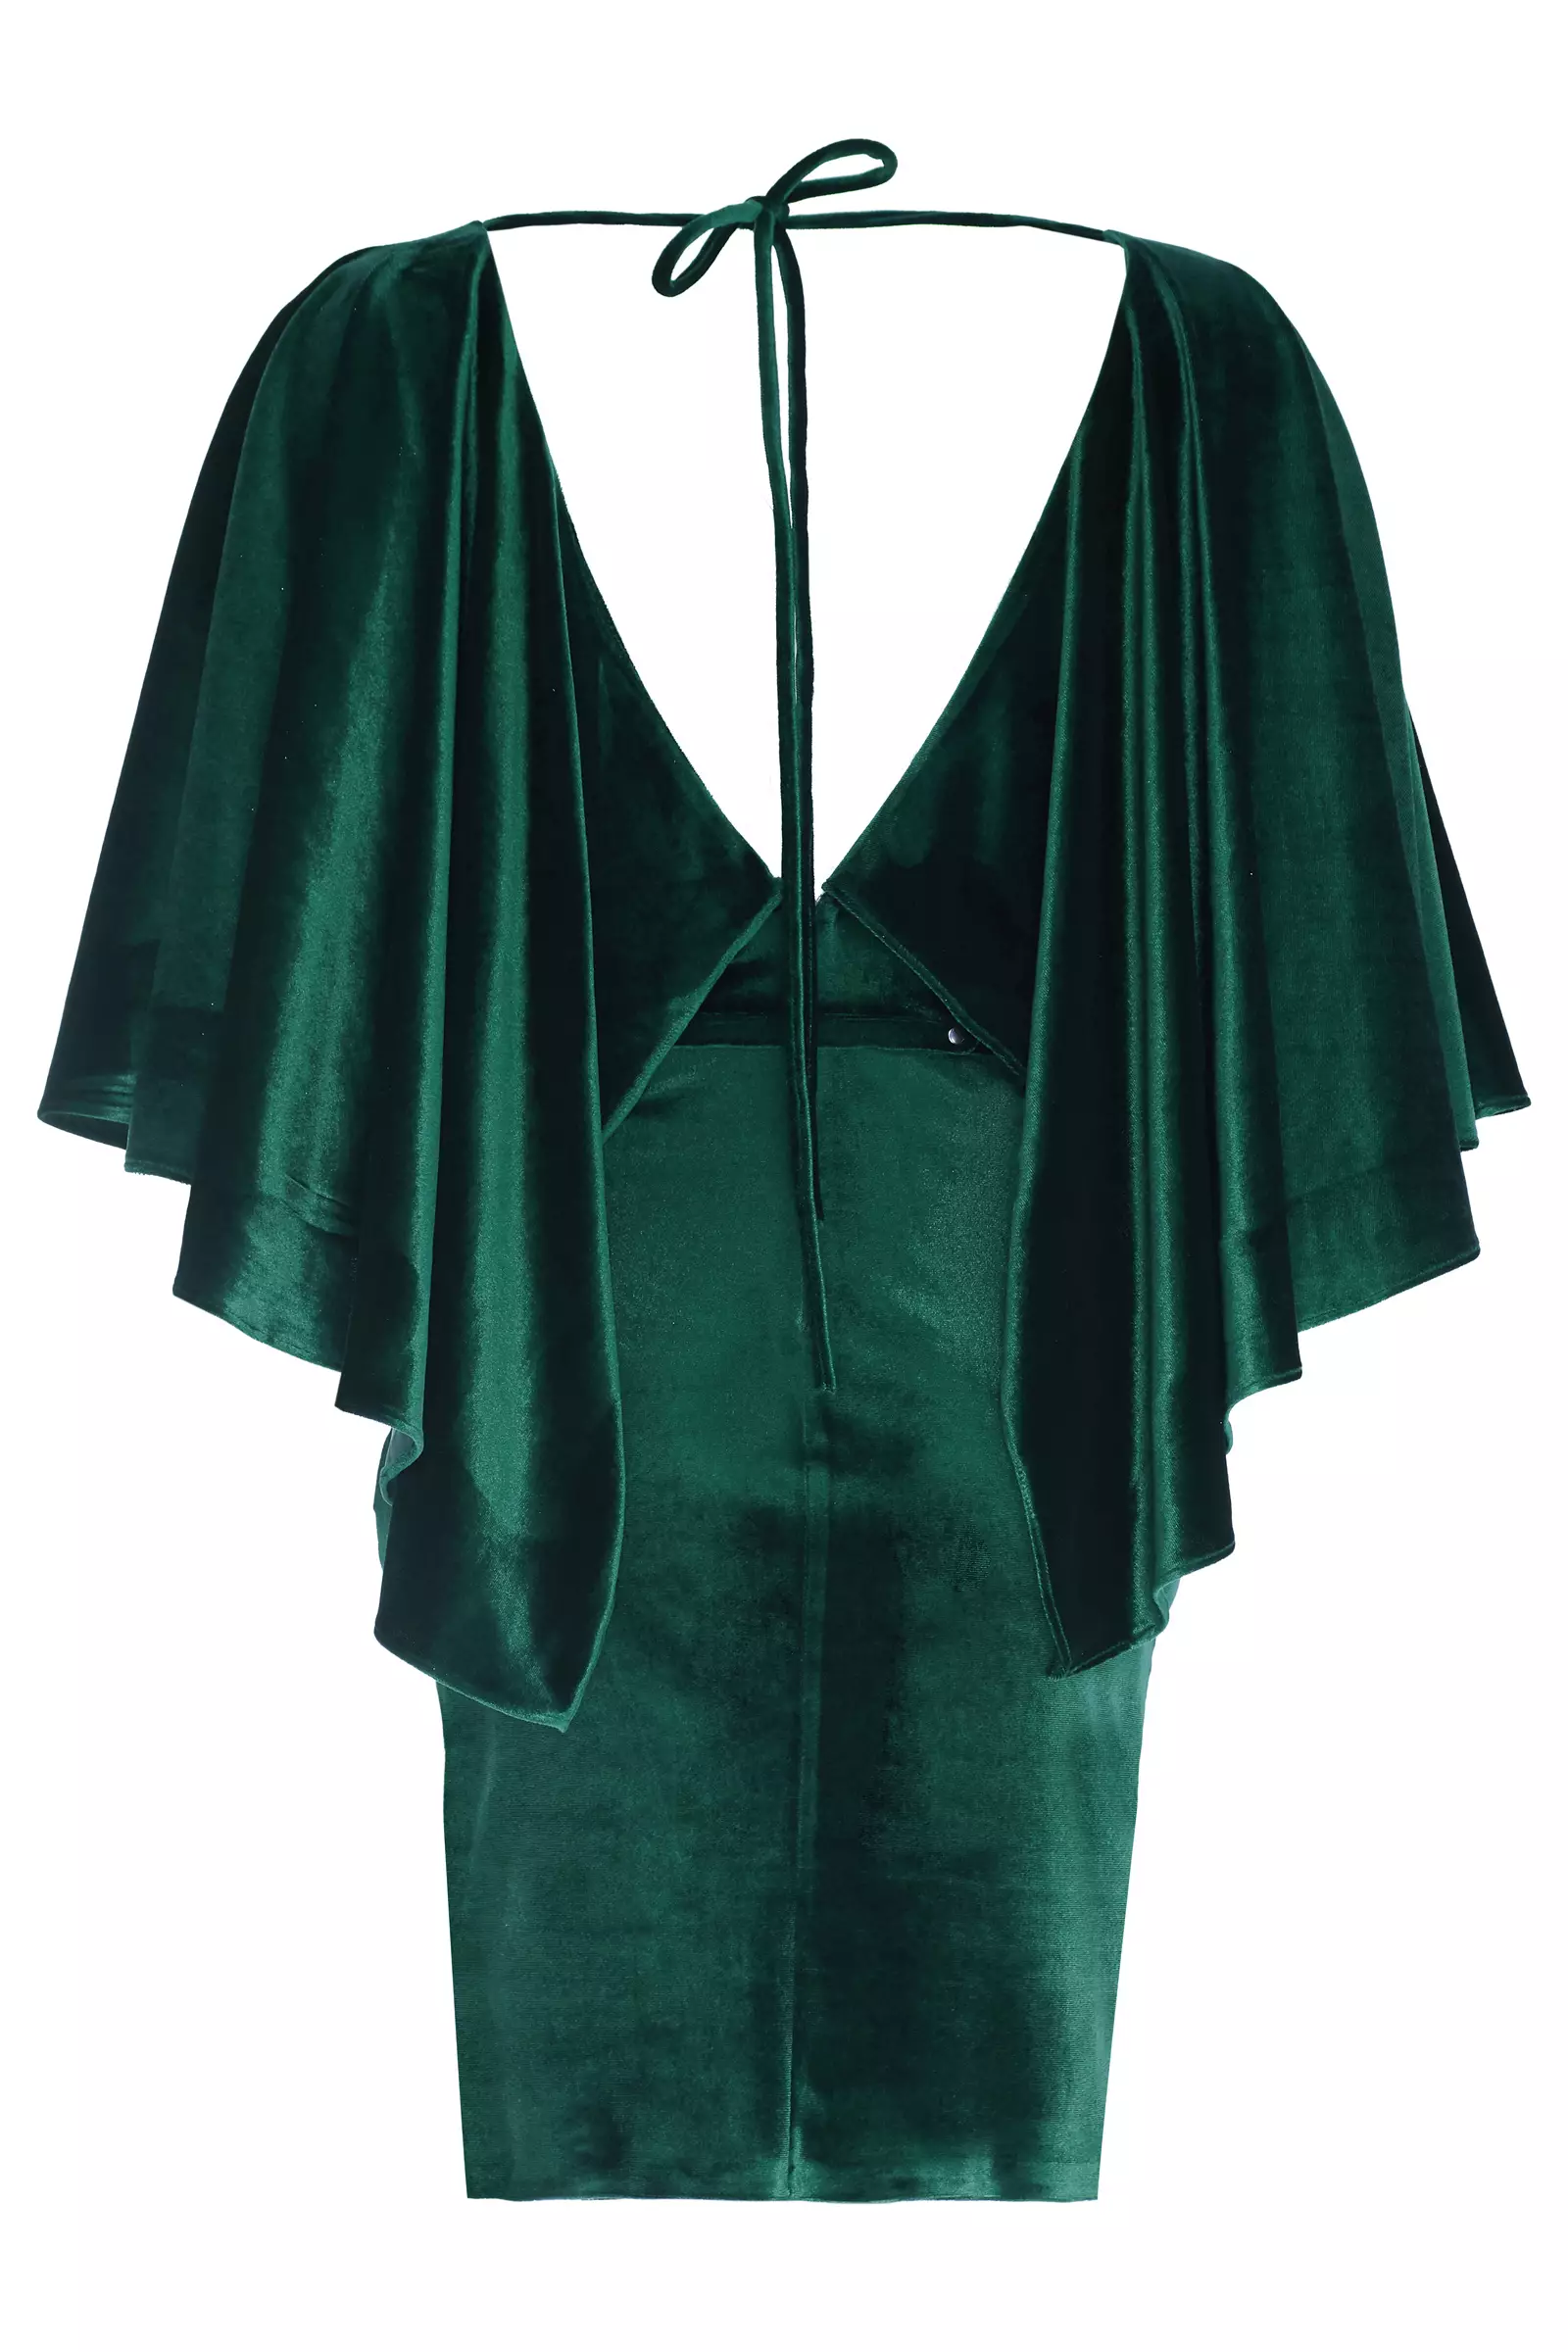 Green velvet short sleeve mini dress